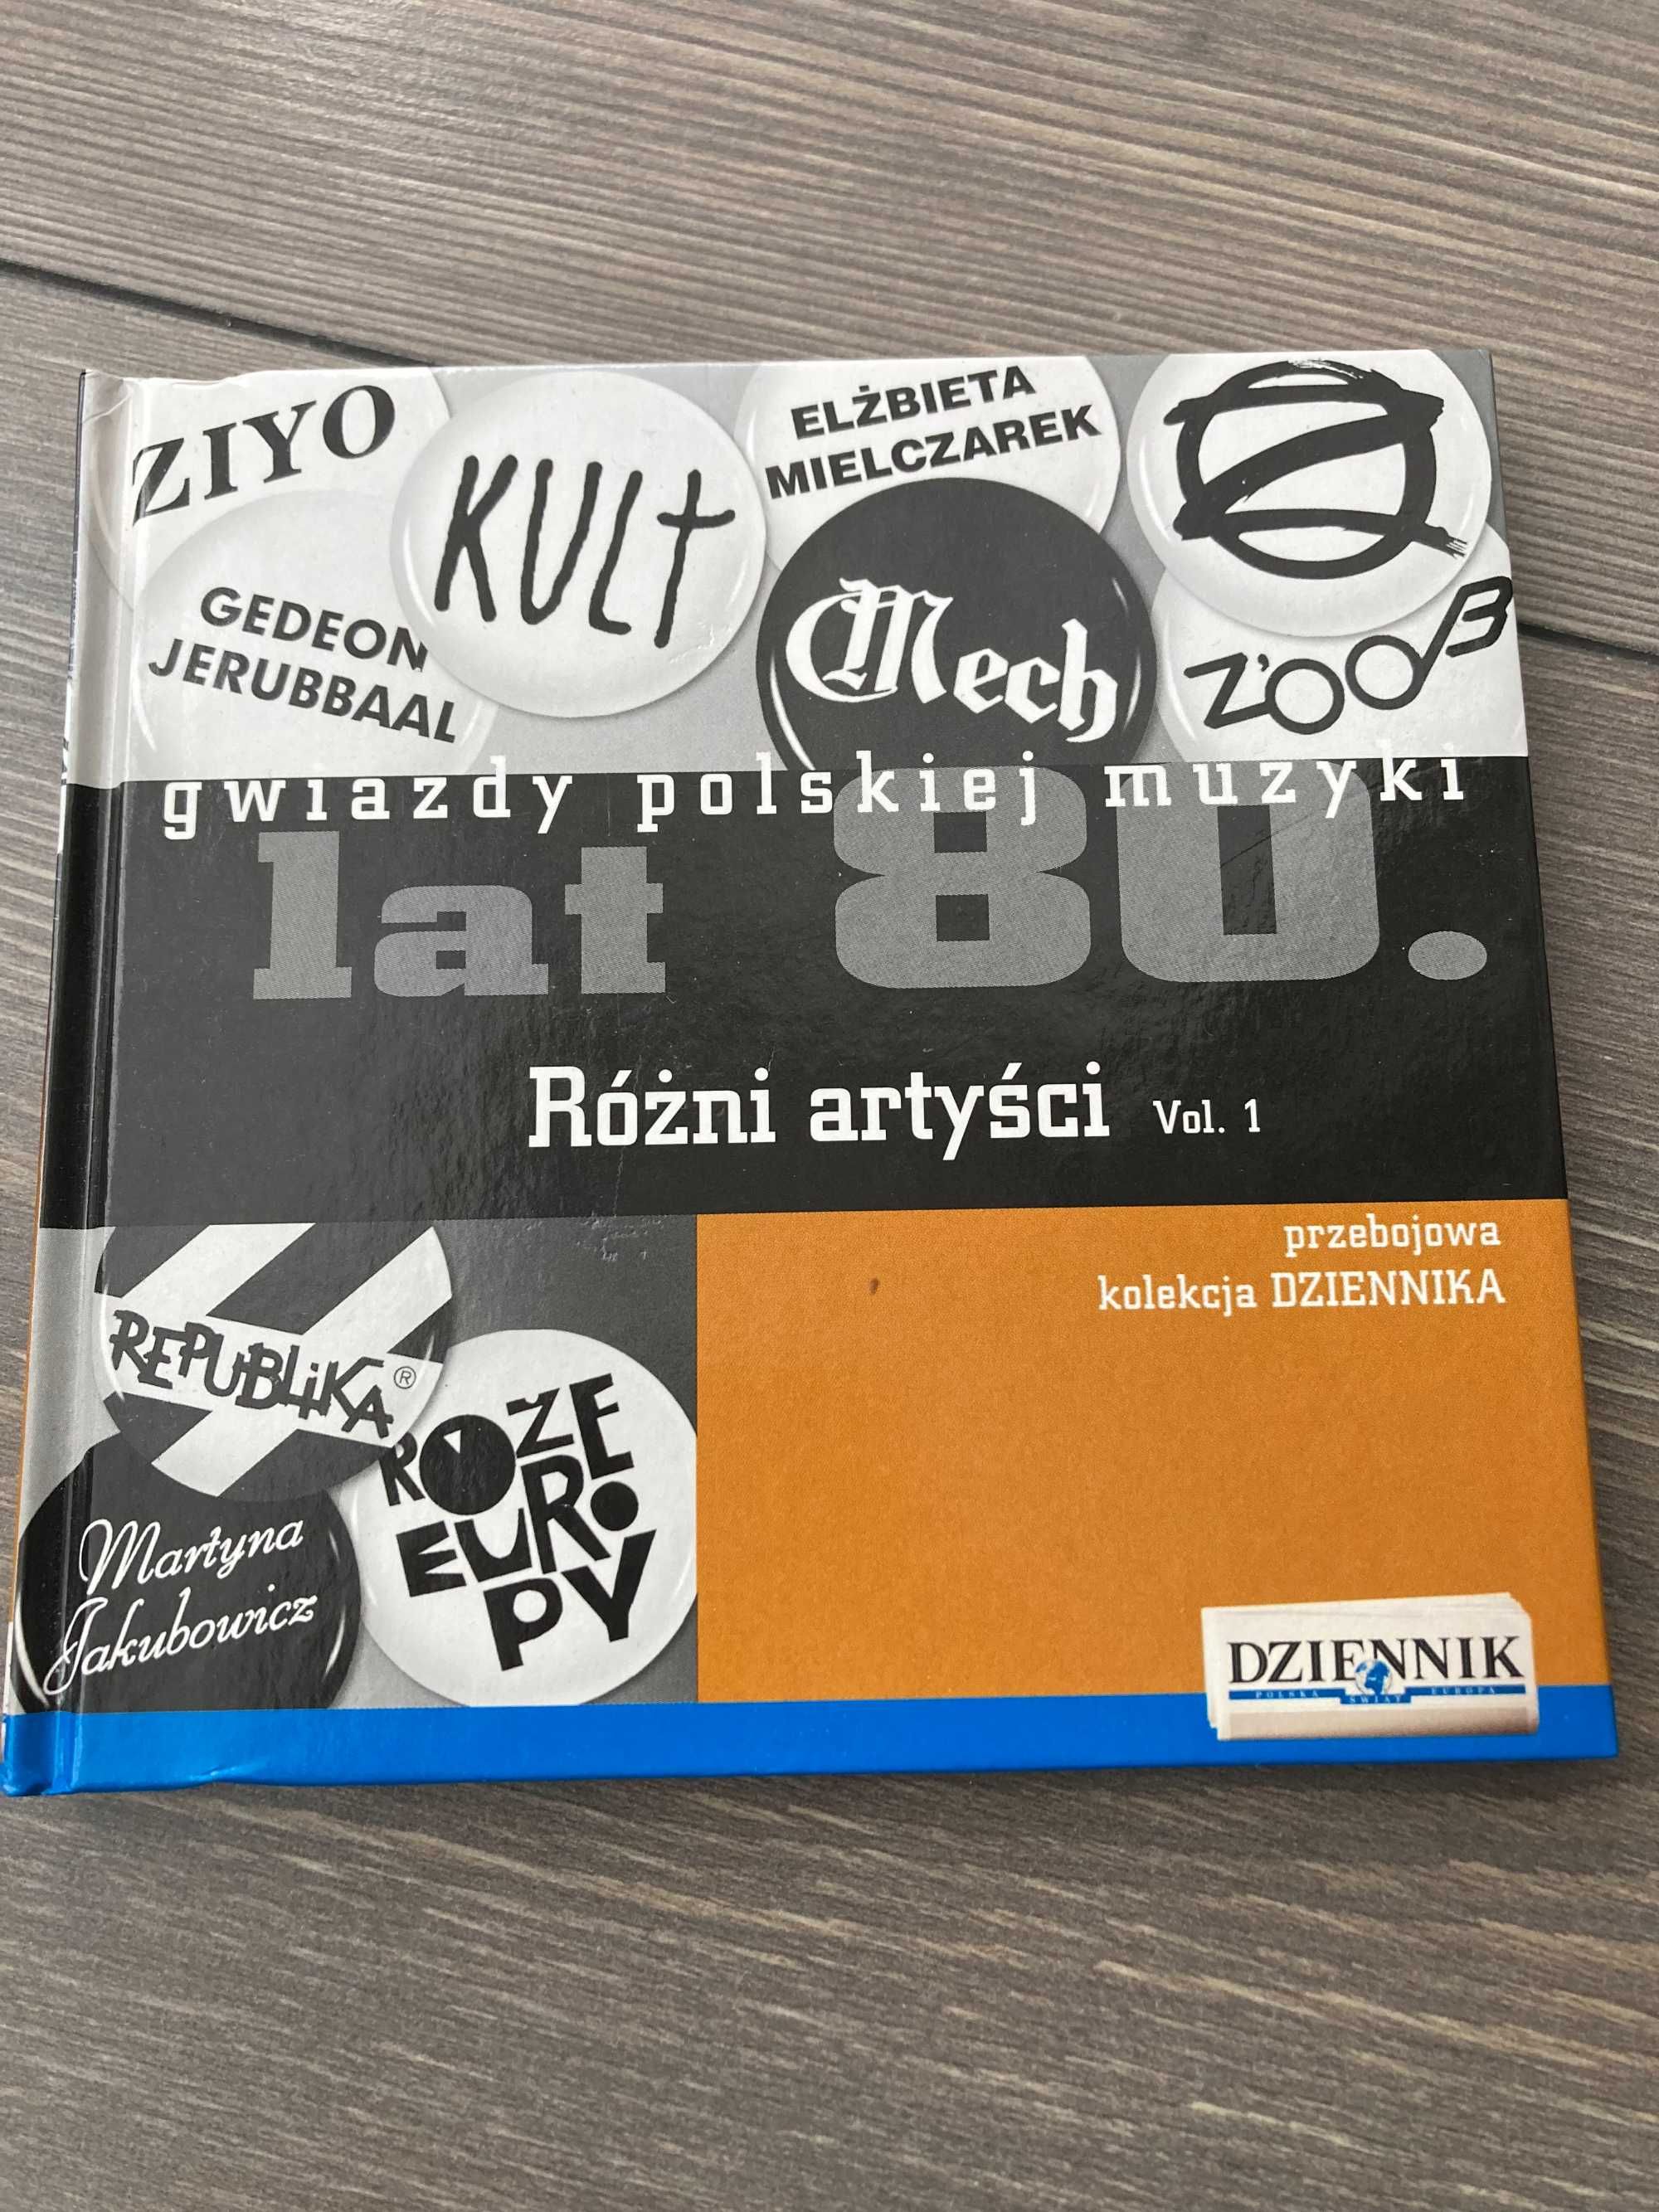 Gwiazdy polskiej muzyki lata 80 Różni artyści nr 29 - CD